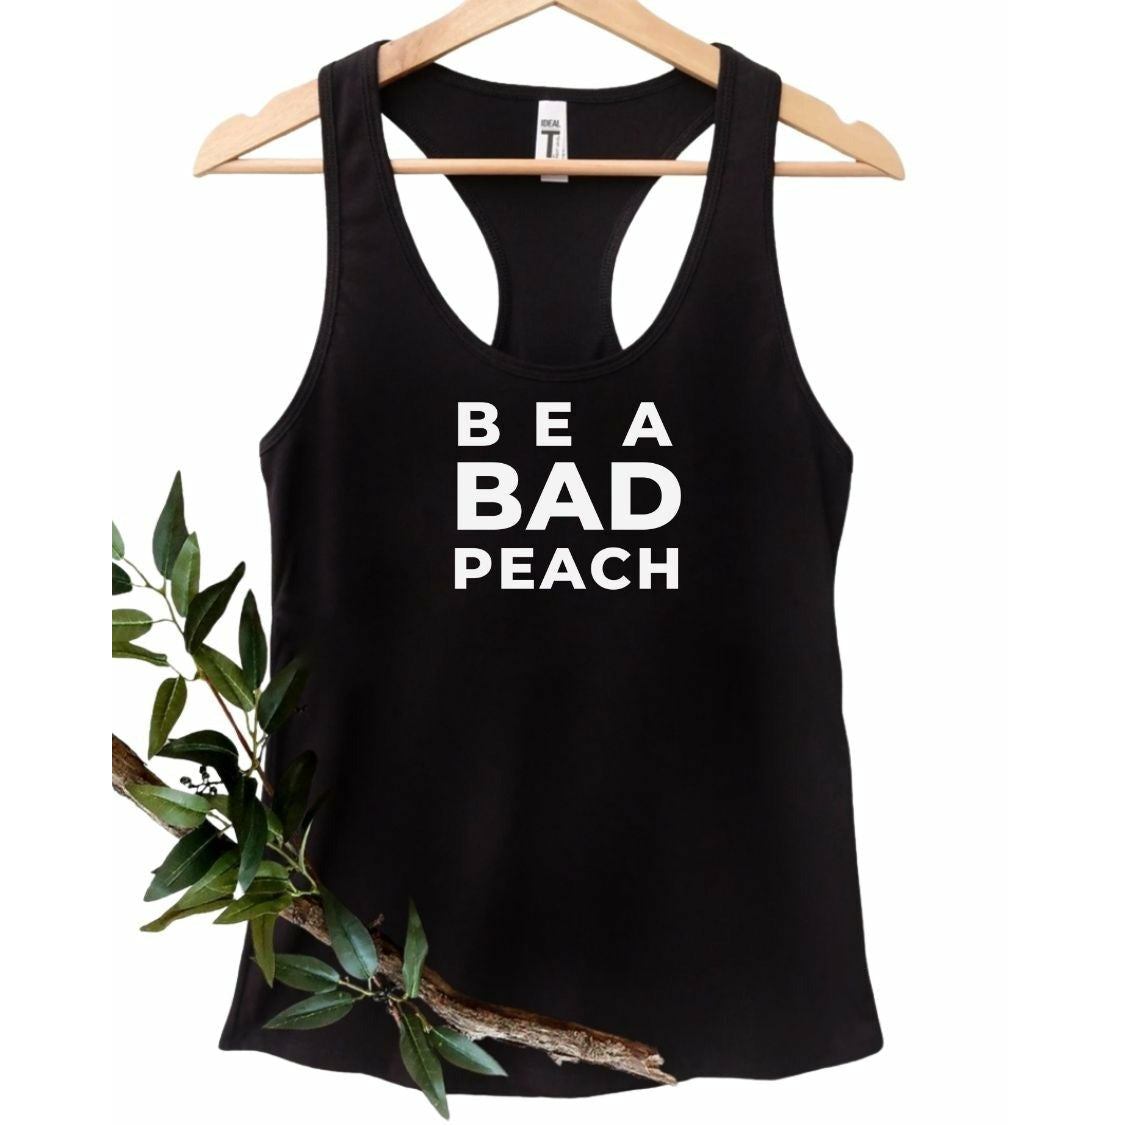 Be A Bad Peach - Tank Top